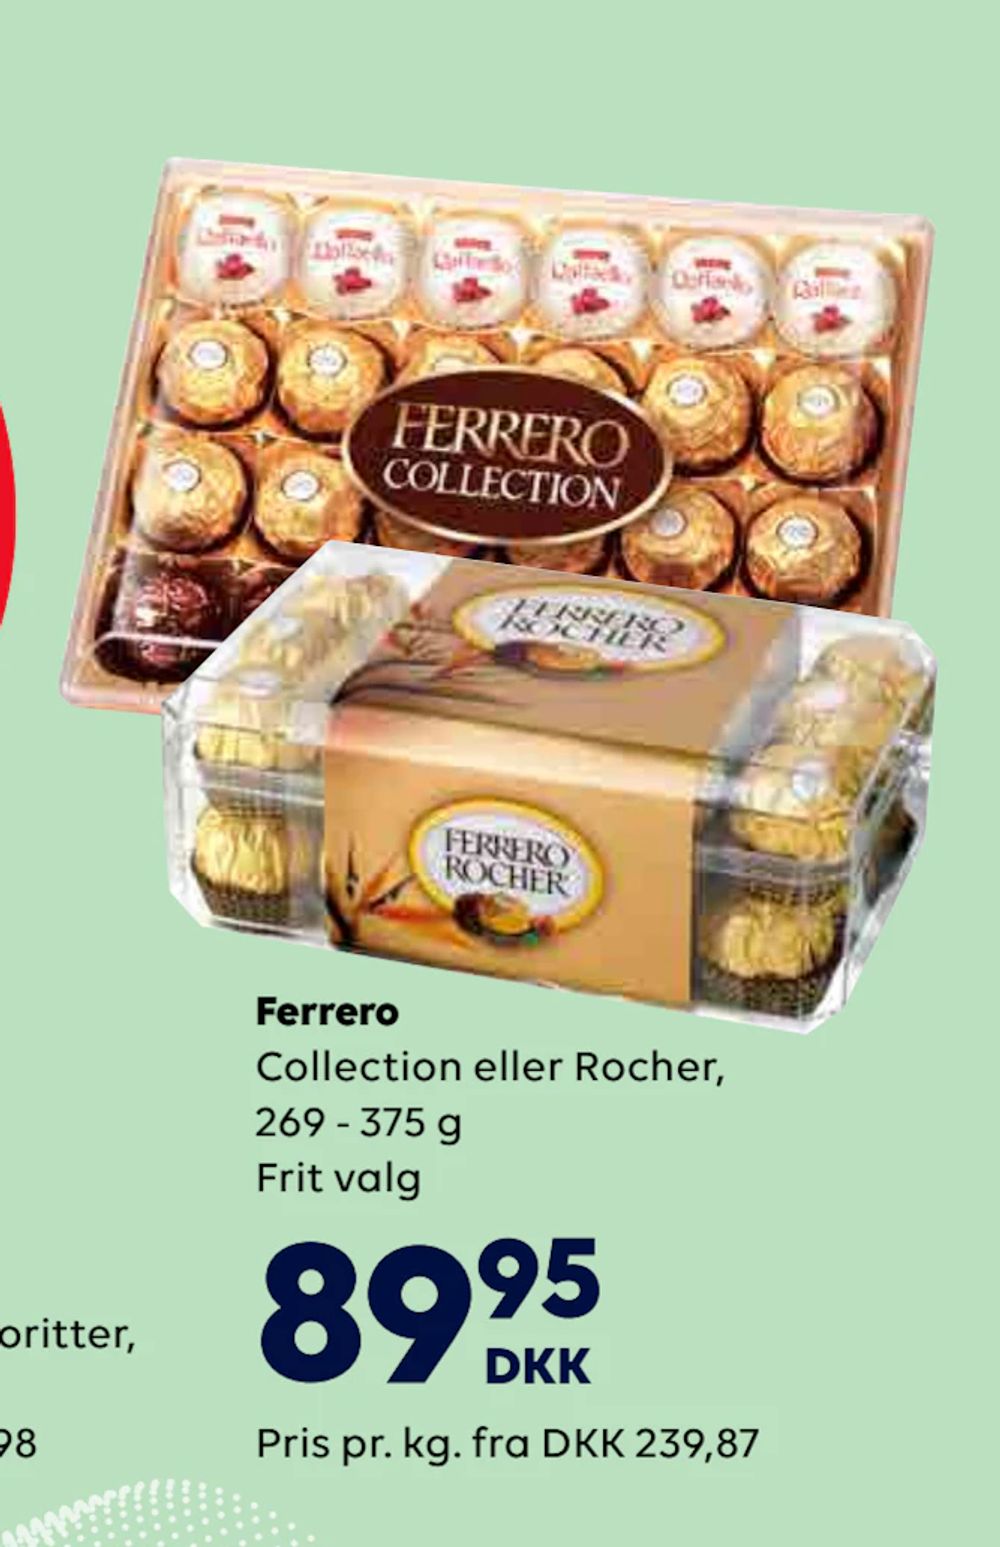 Tilbud på Ferrero fra BorderShop til 89,95 kr.